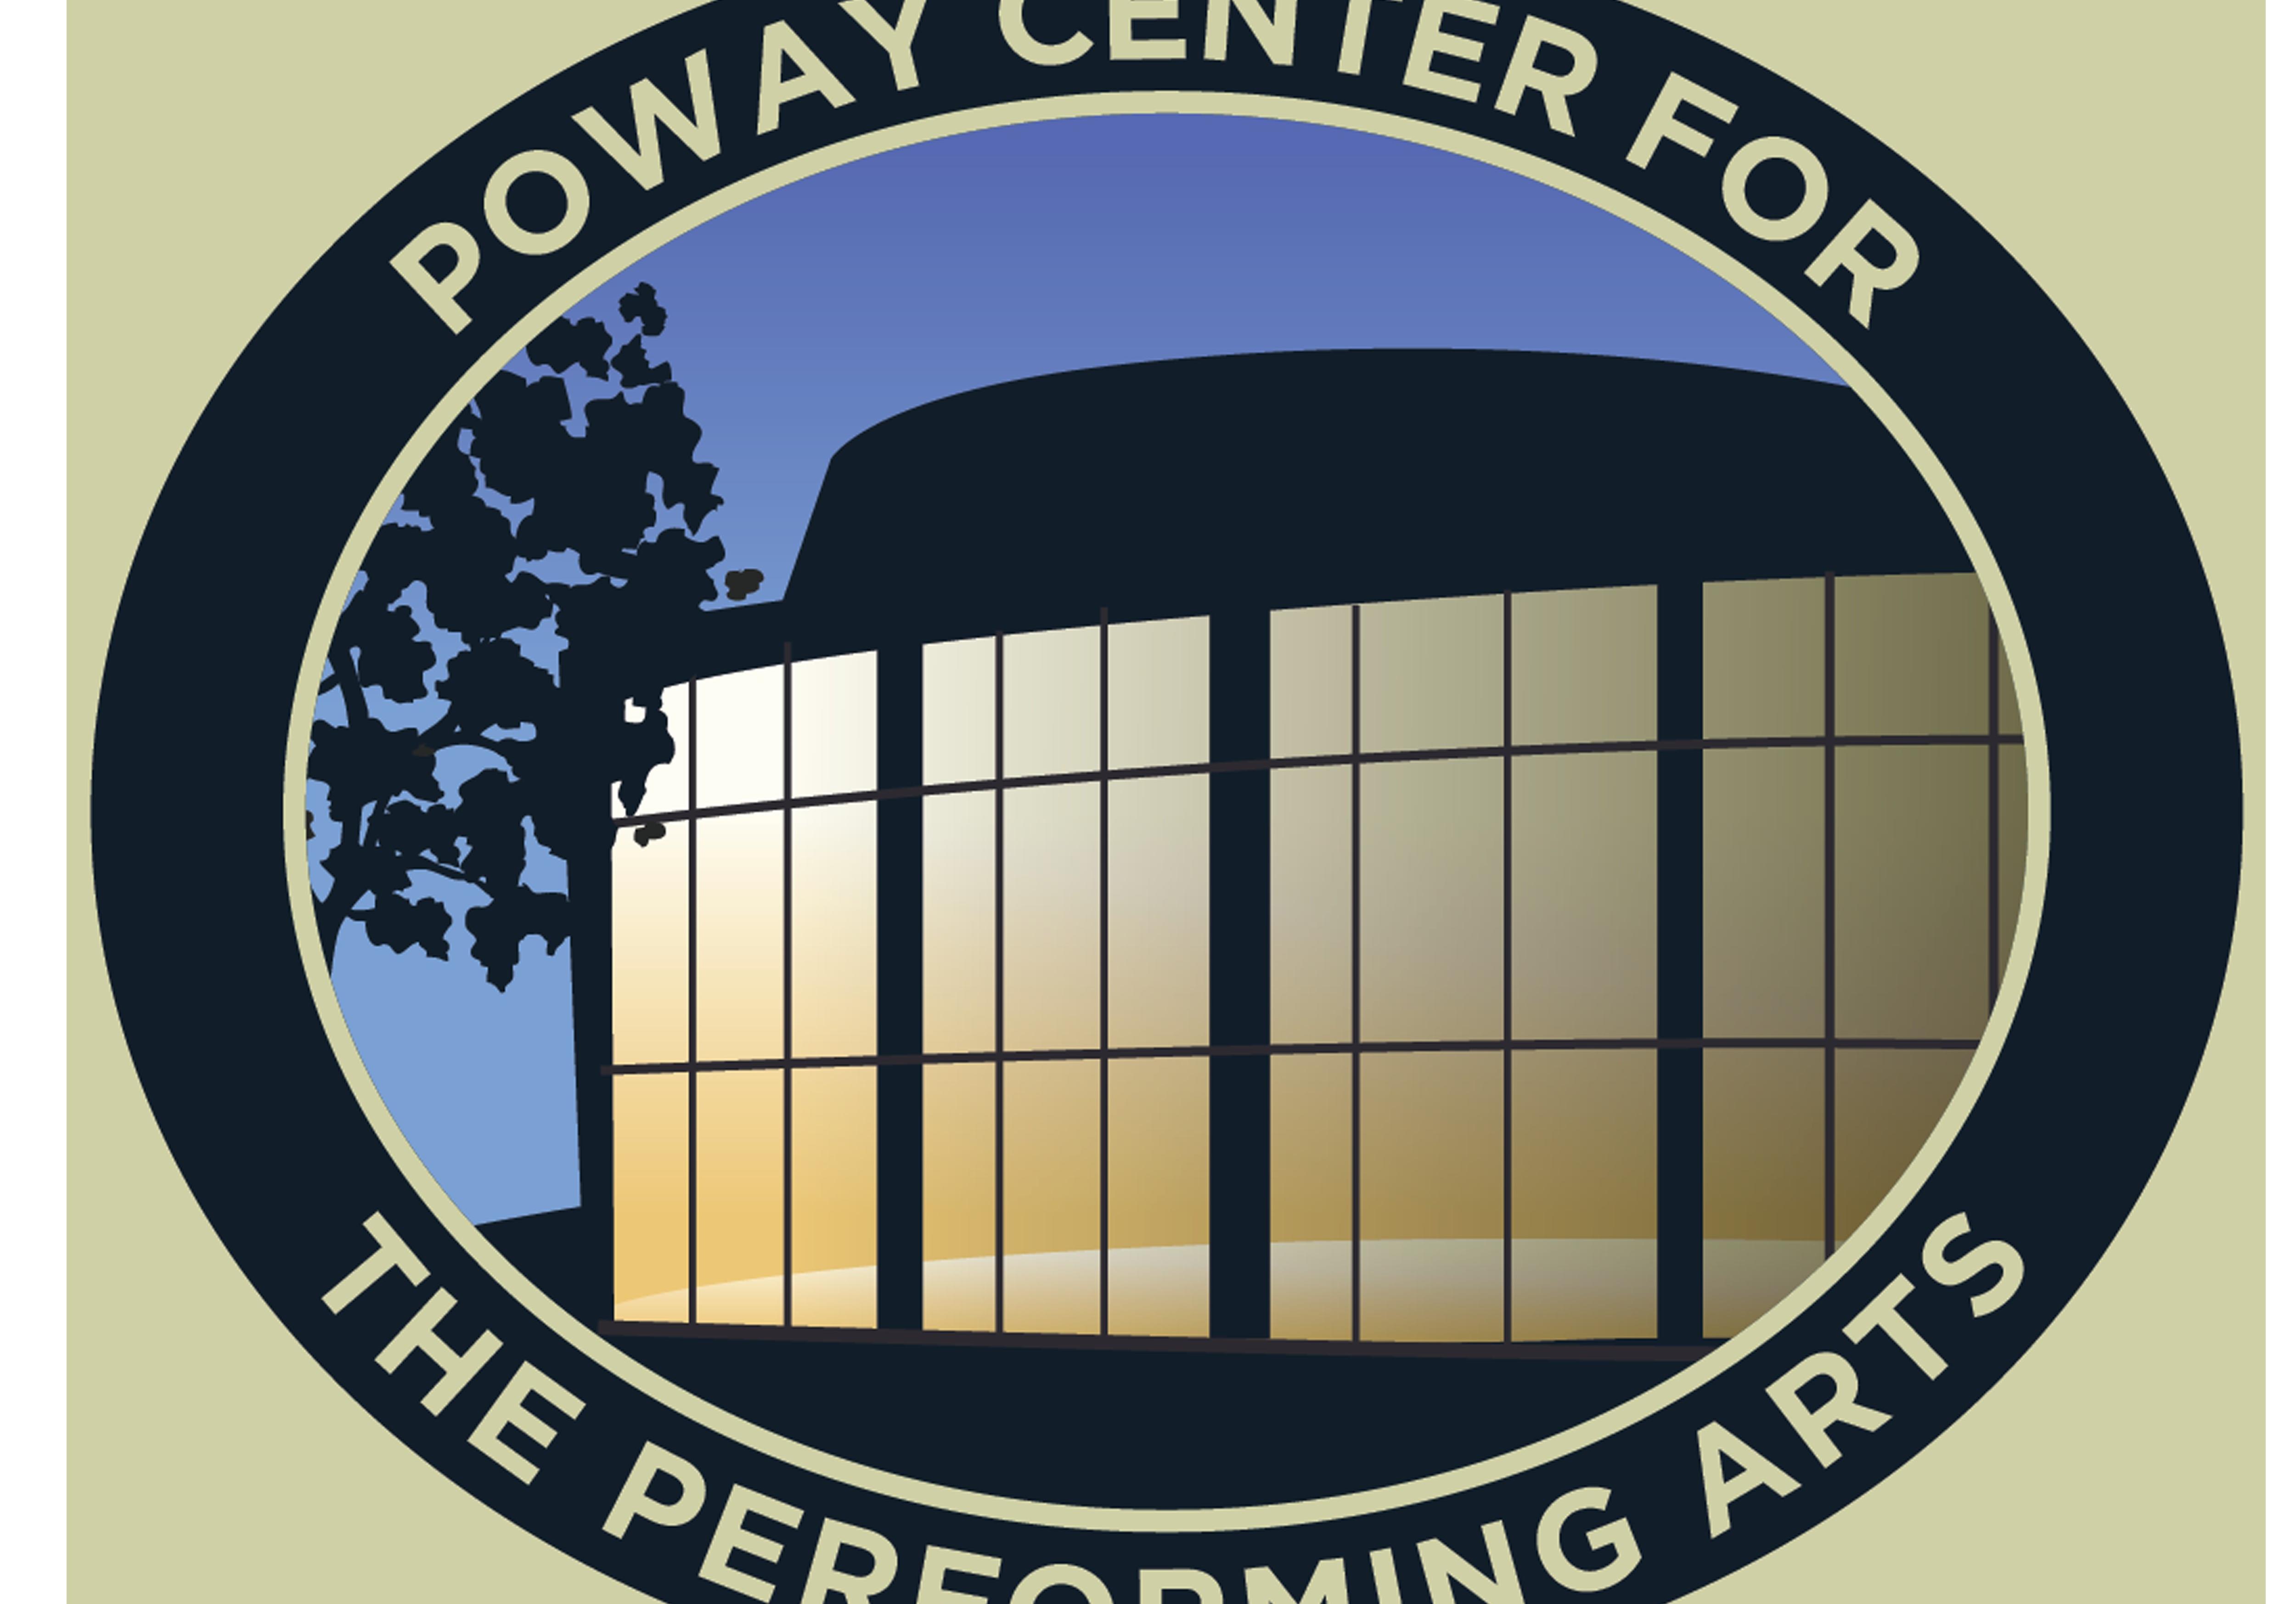 xpressive arts center poway